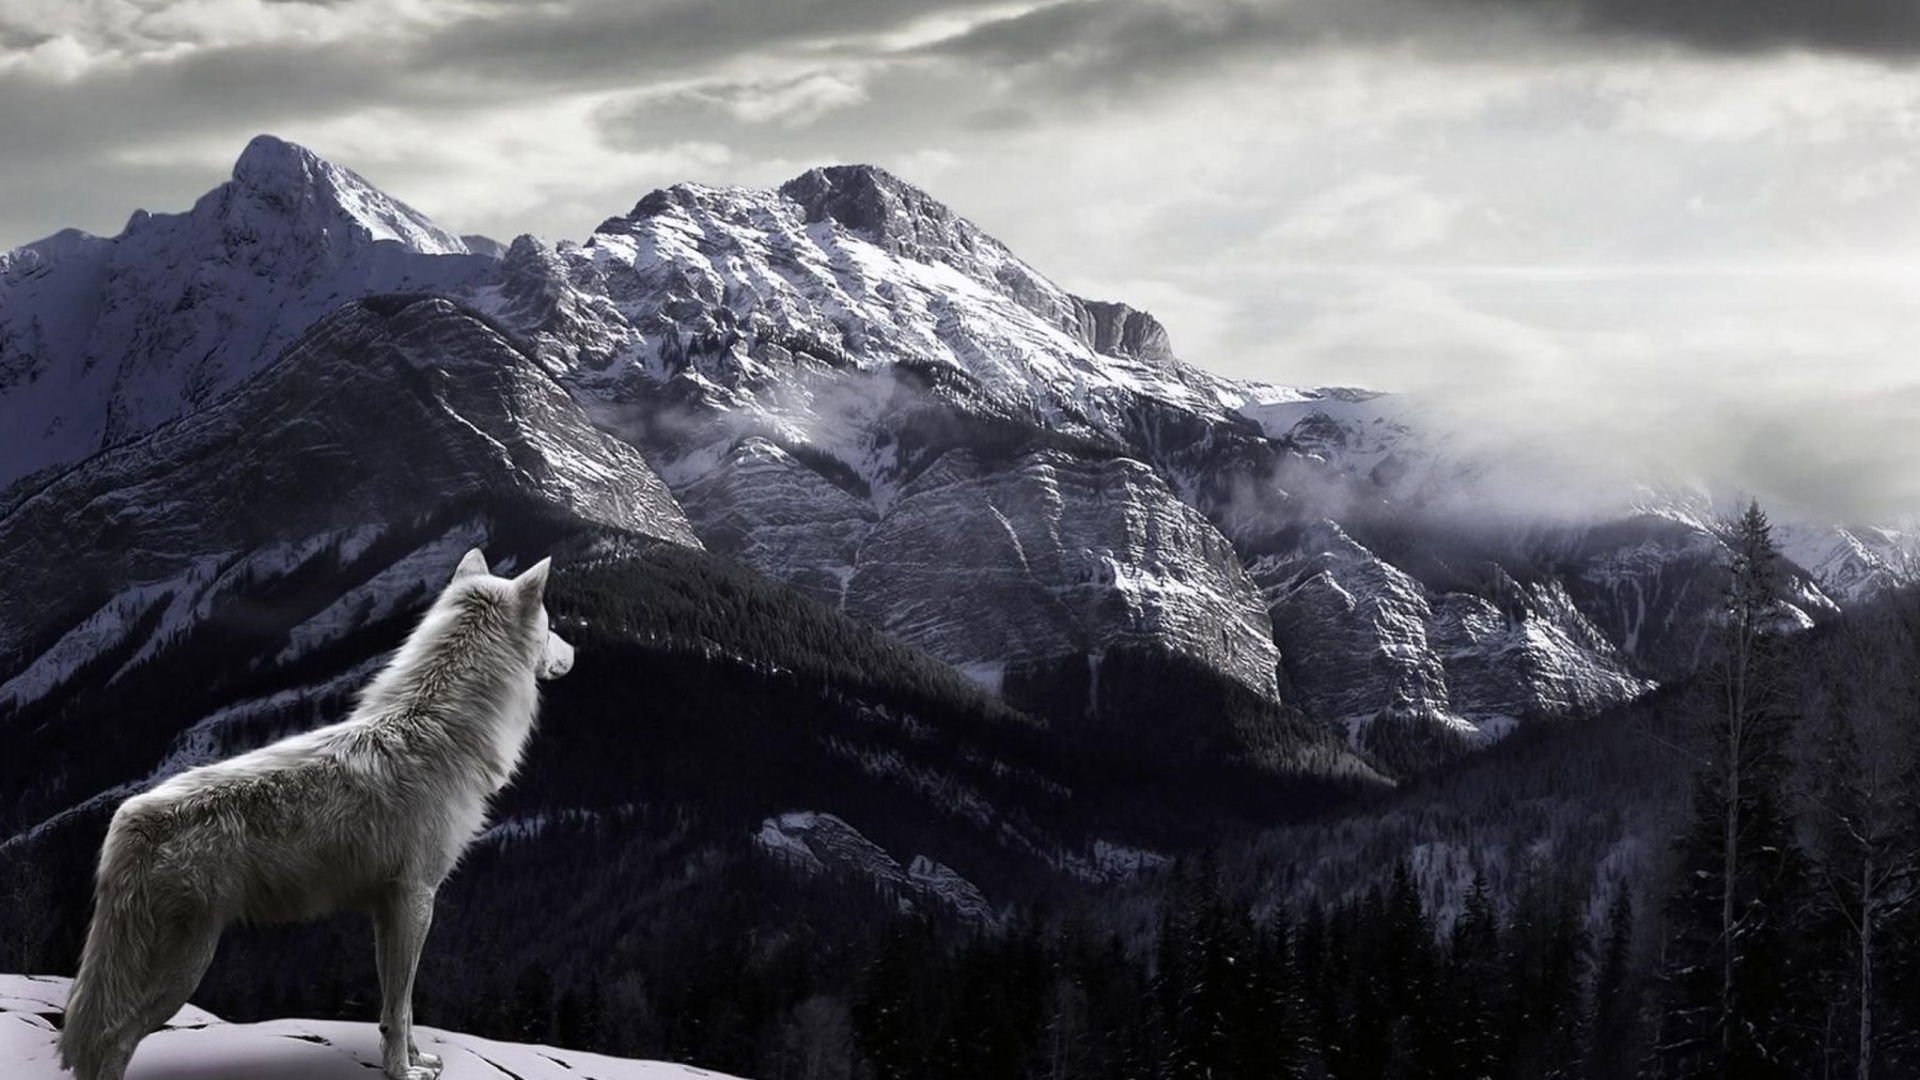 Обои Wolf in Mountain 1920x1080